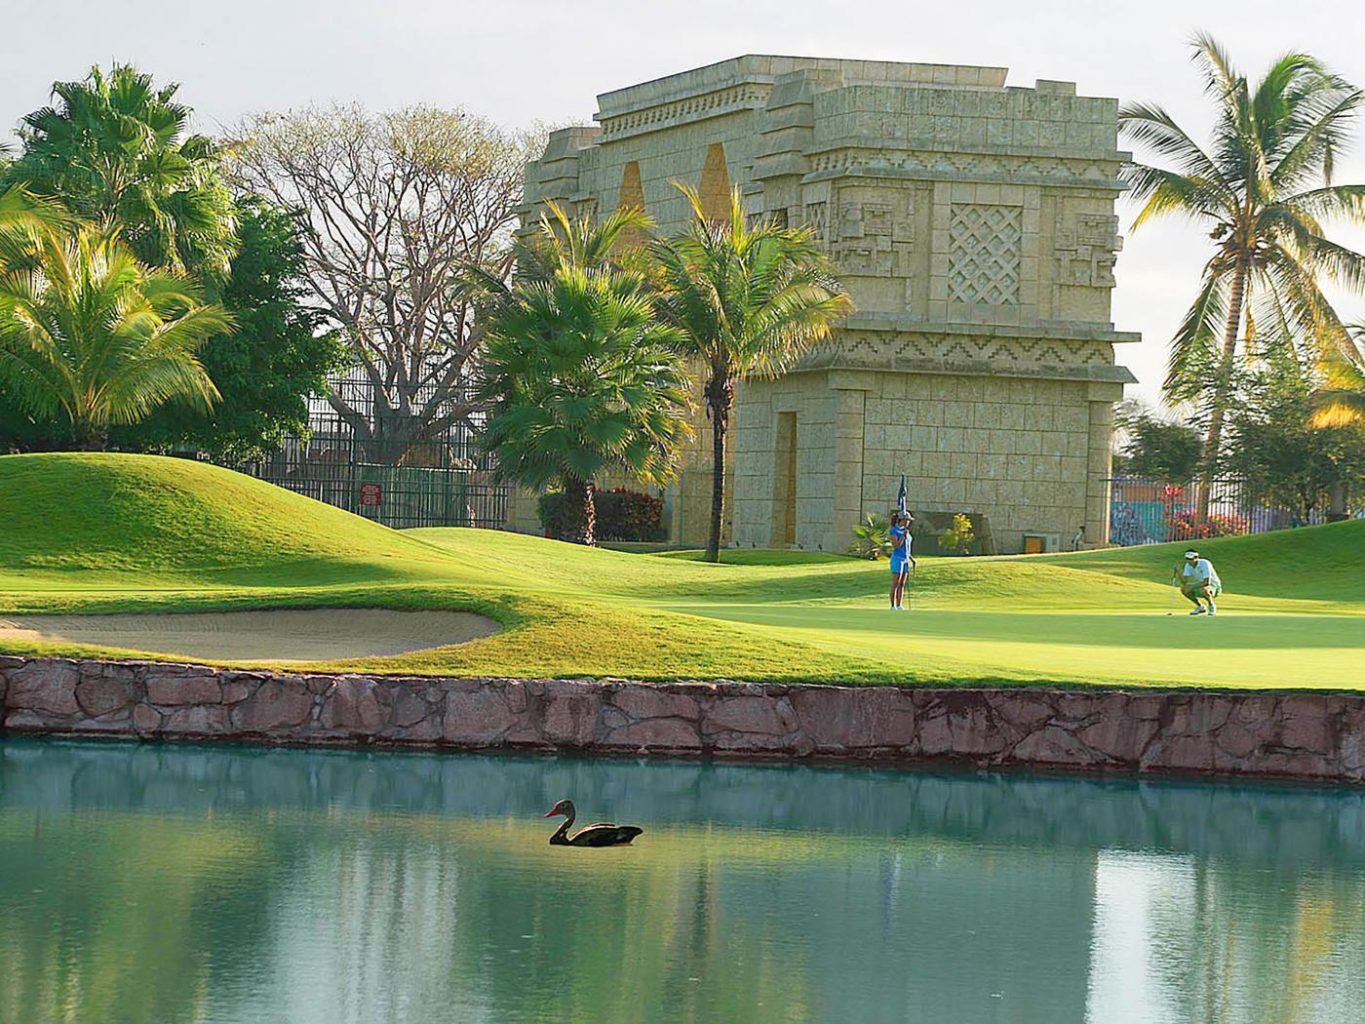 El tigre golf, golf in Mexico